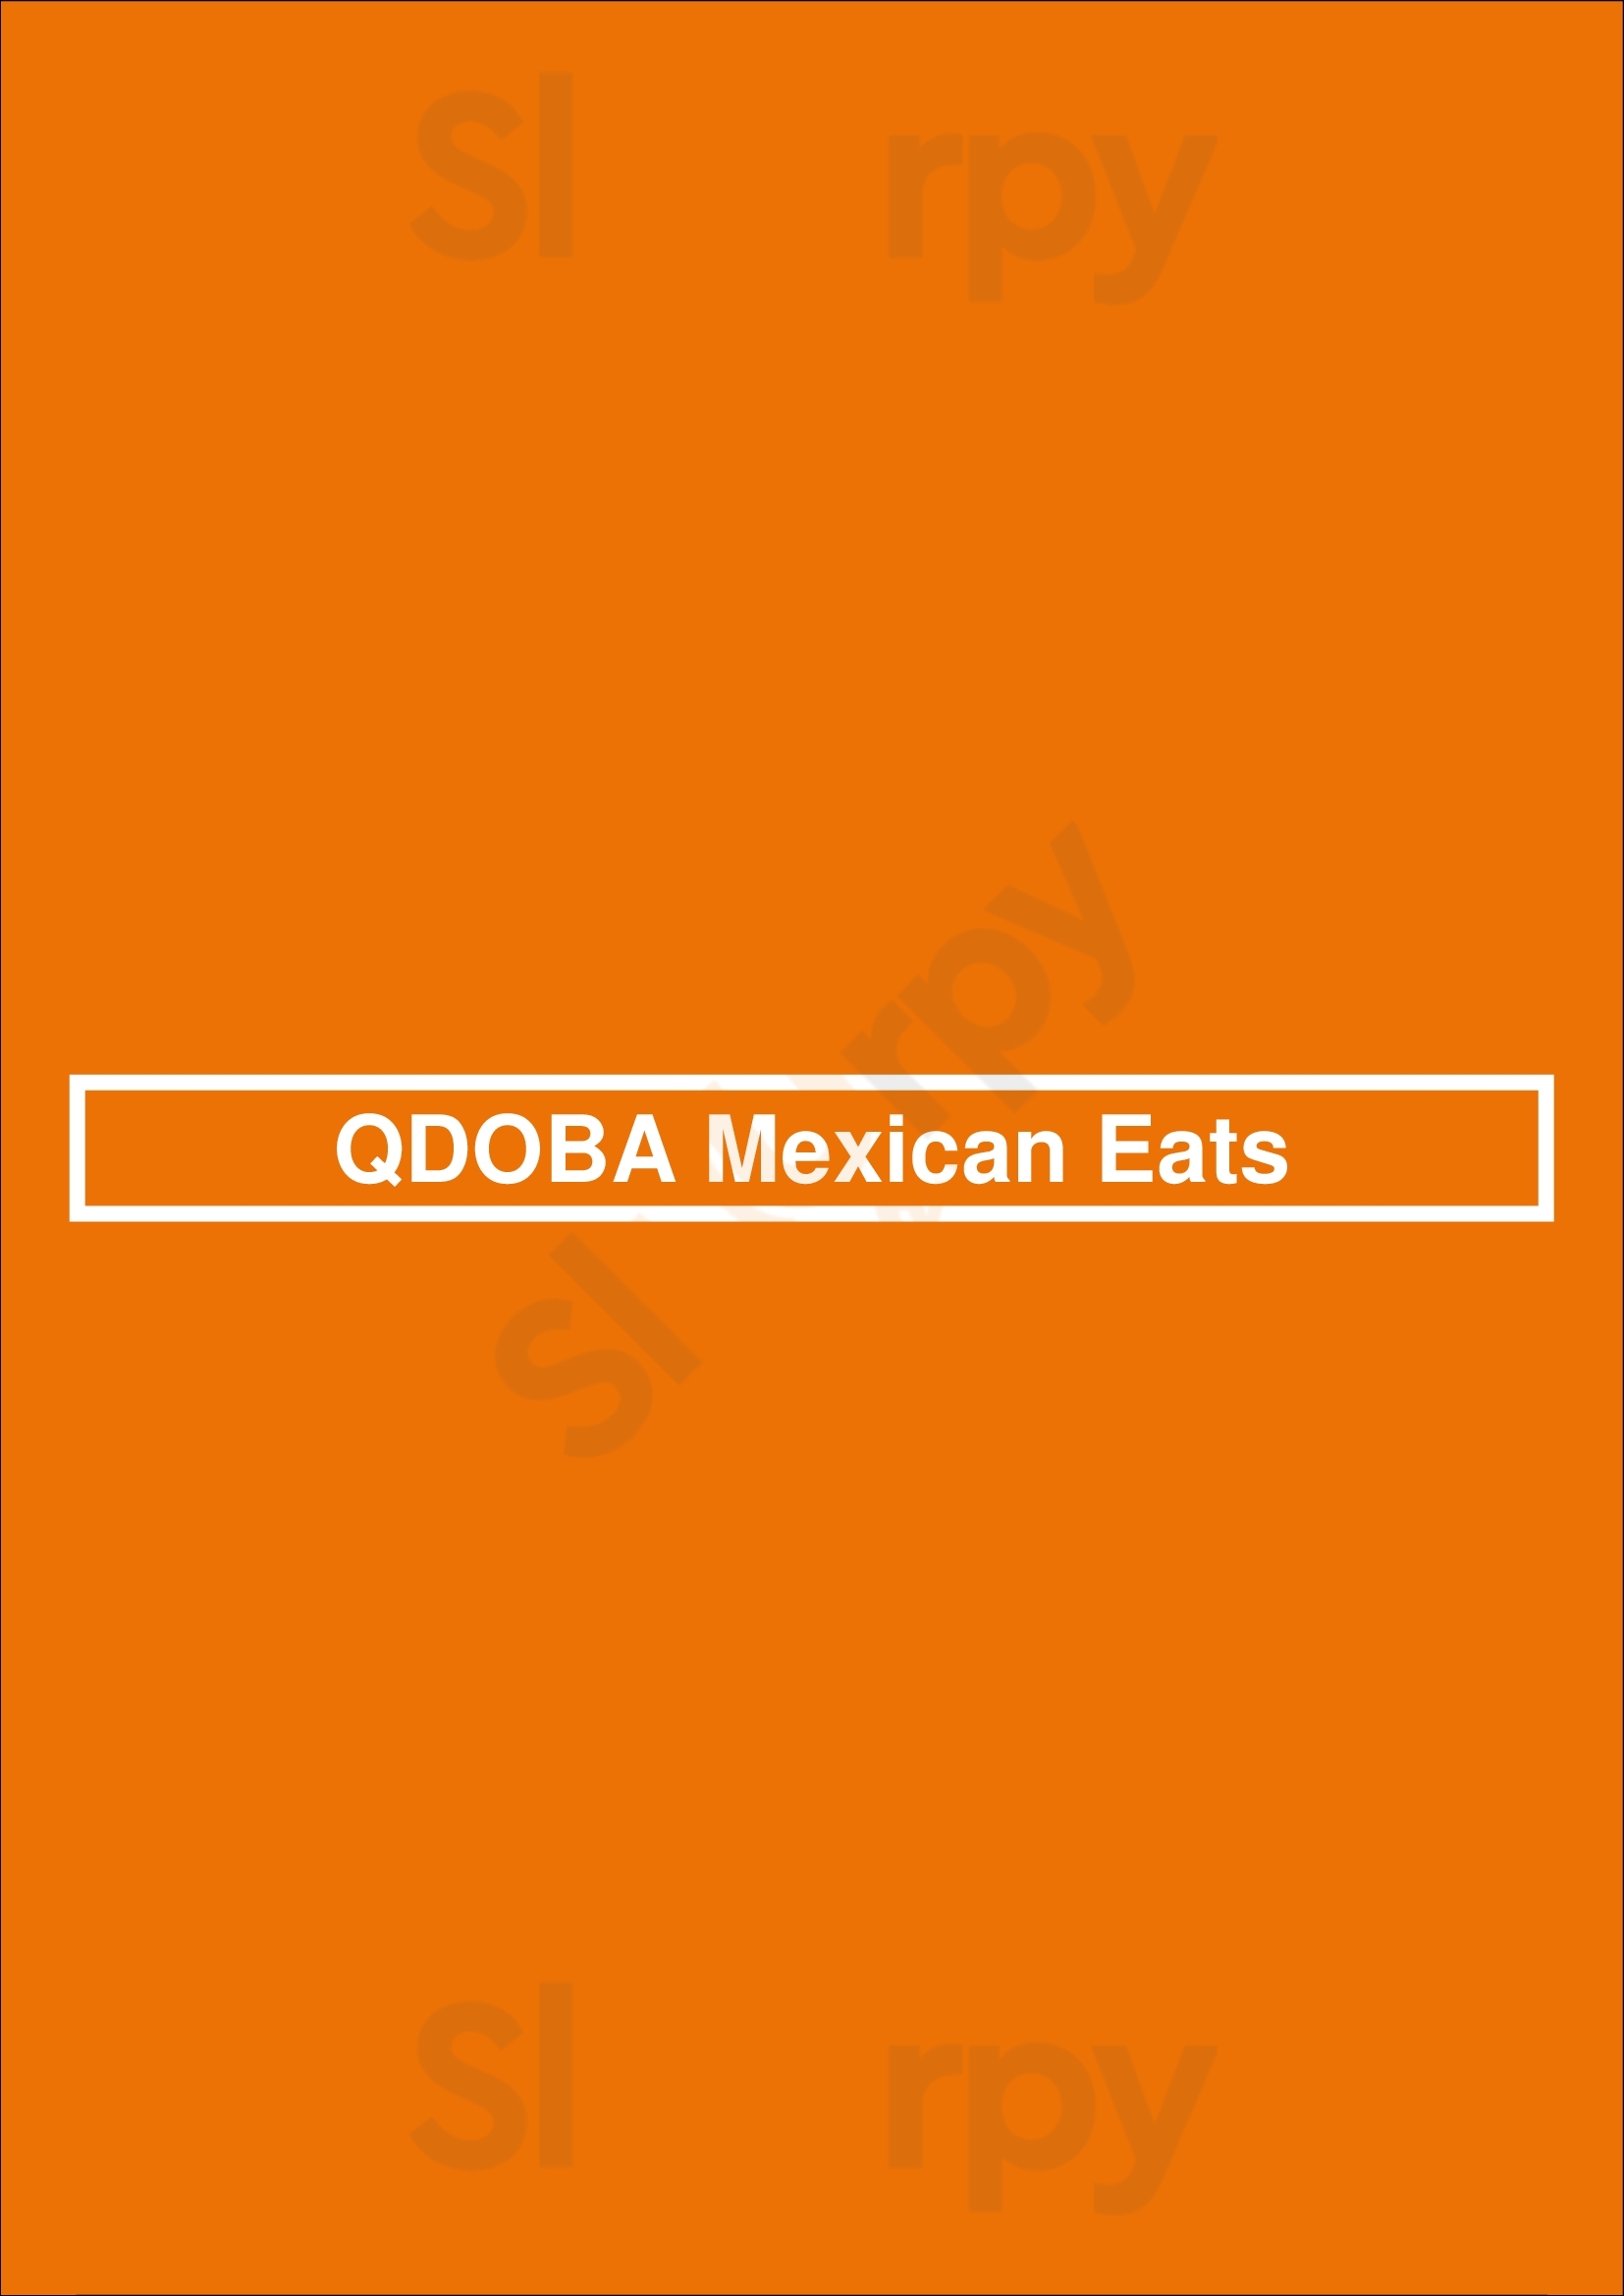 Qdoba Mexican Eats Louisville Menu - 1